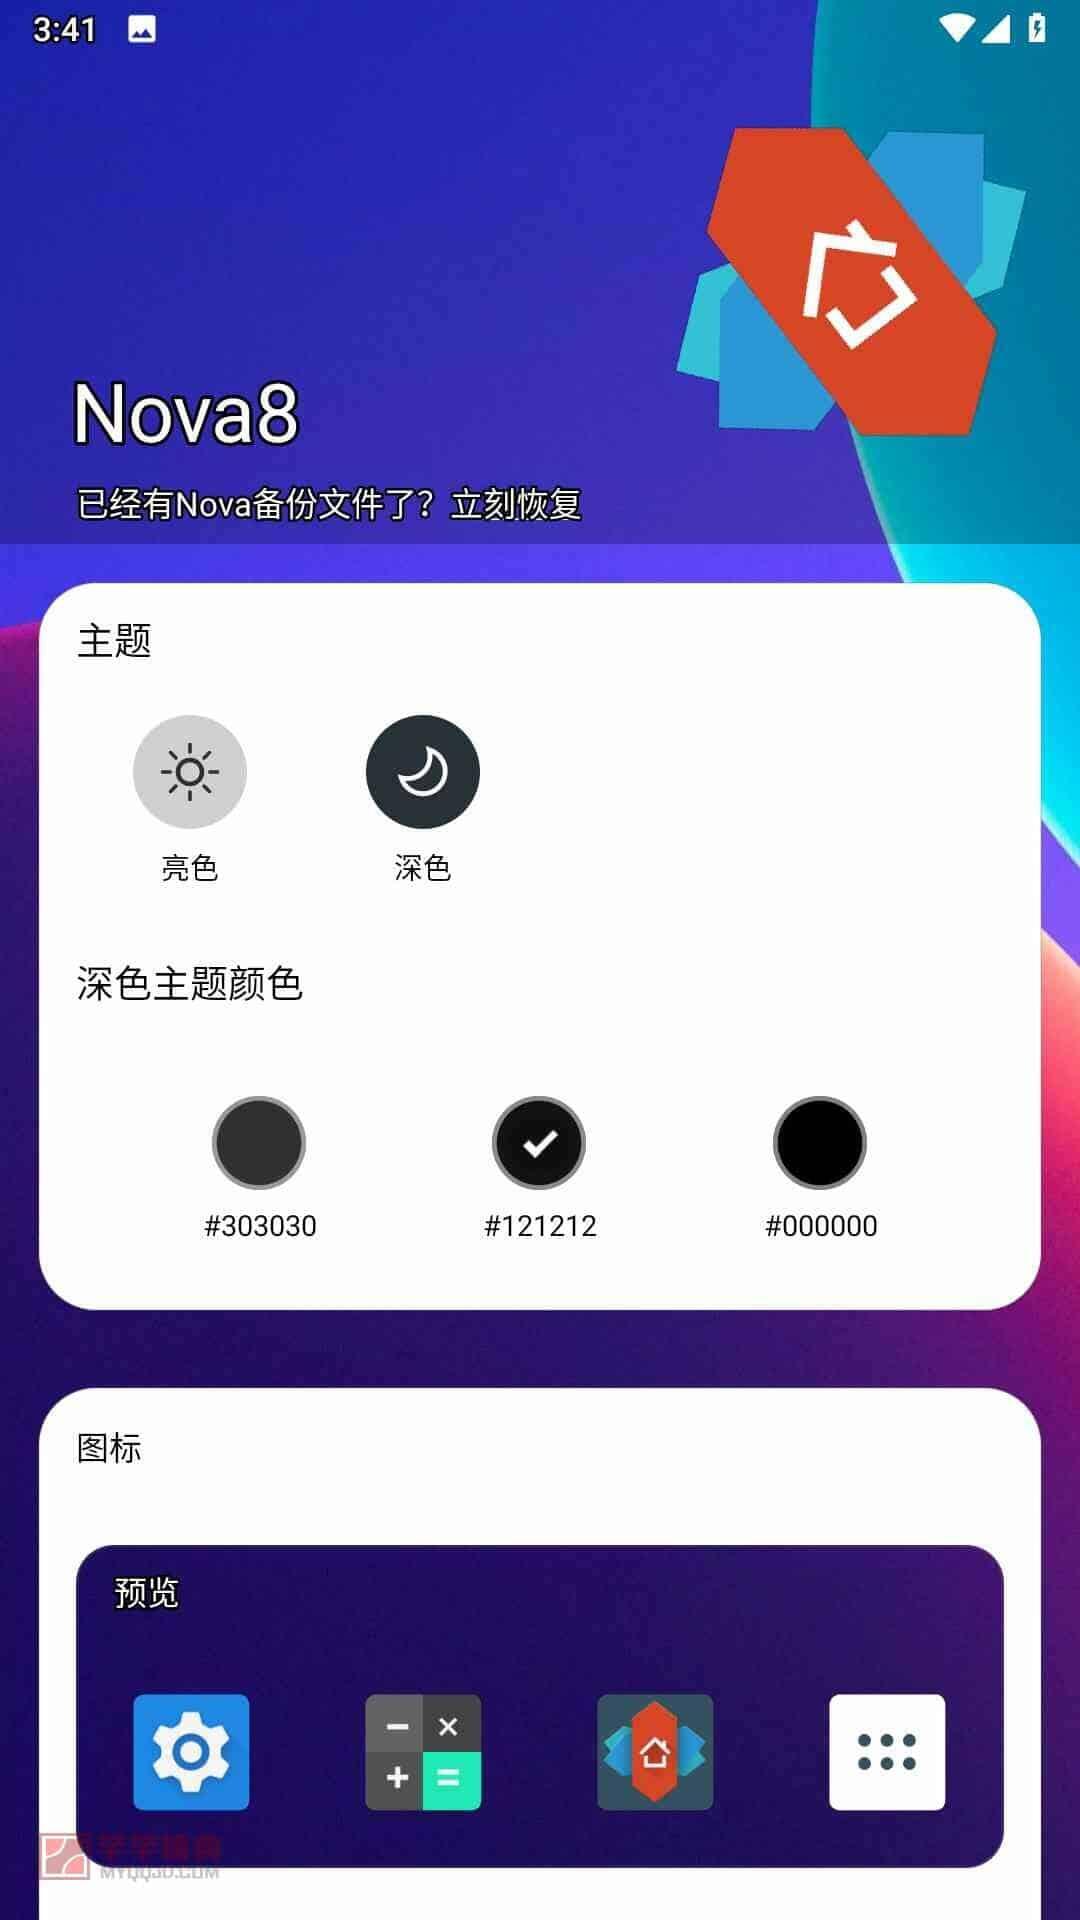 Nova启动器Nova Launcher v8.0.8 for Android 解锁专业版